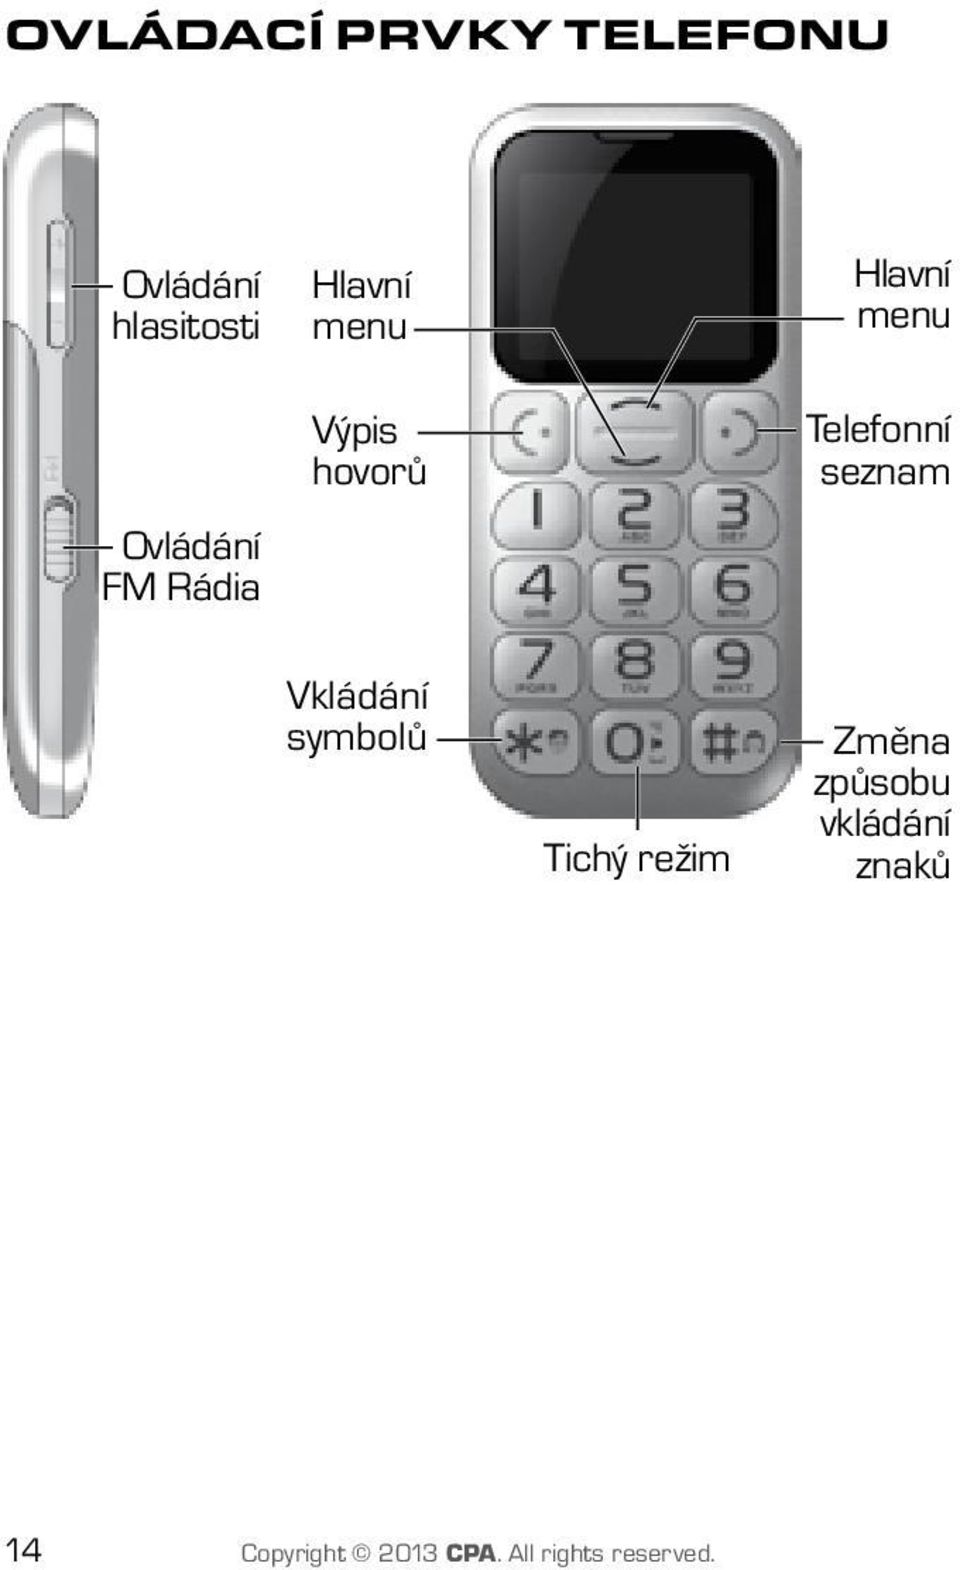 Telefonní seznam Vkládání symbolů Tichý režim Změna